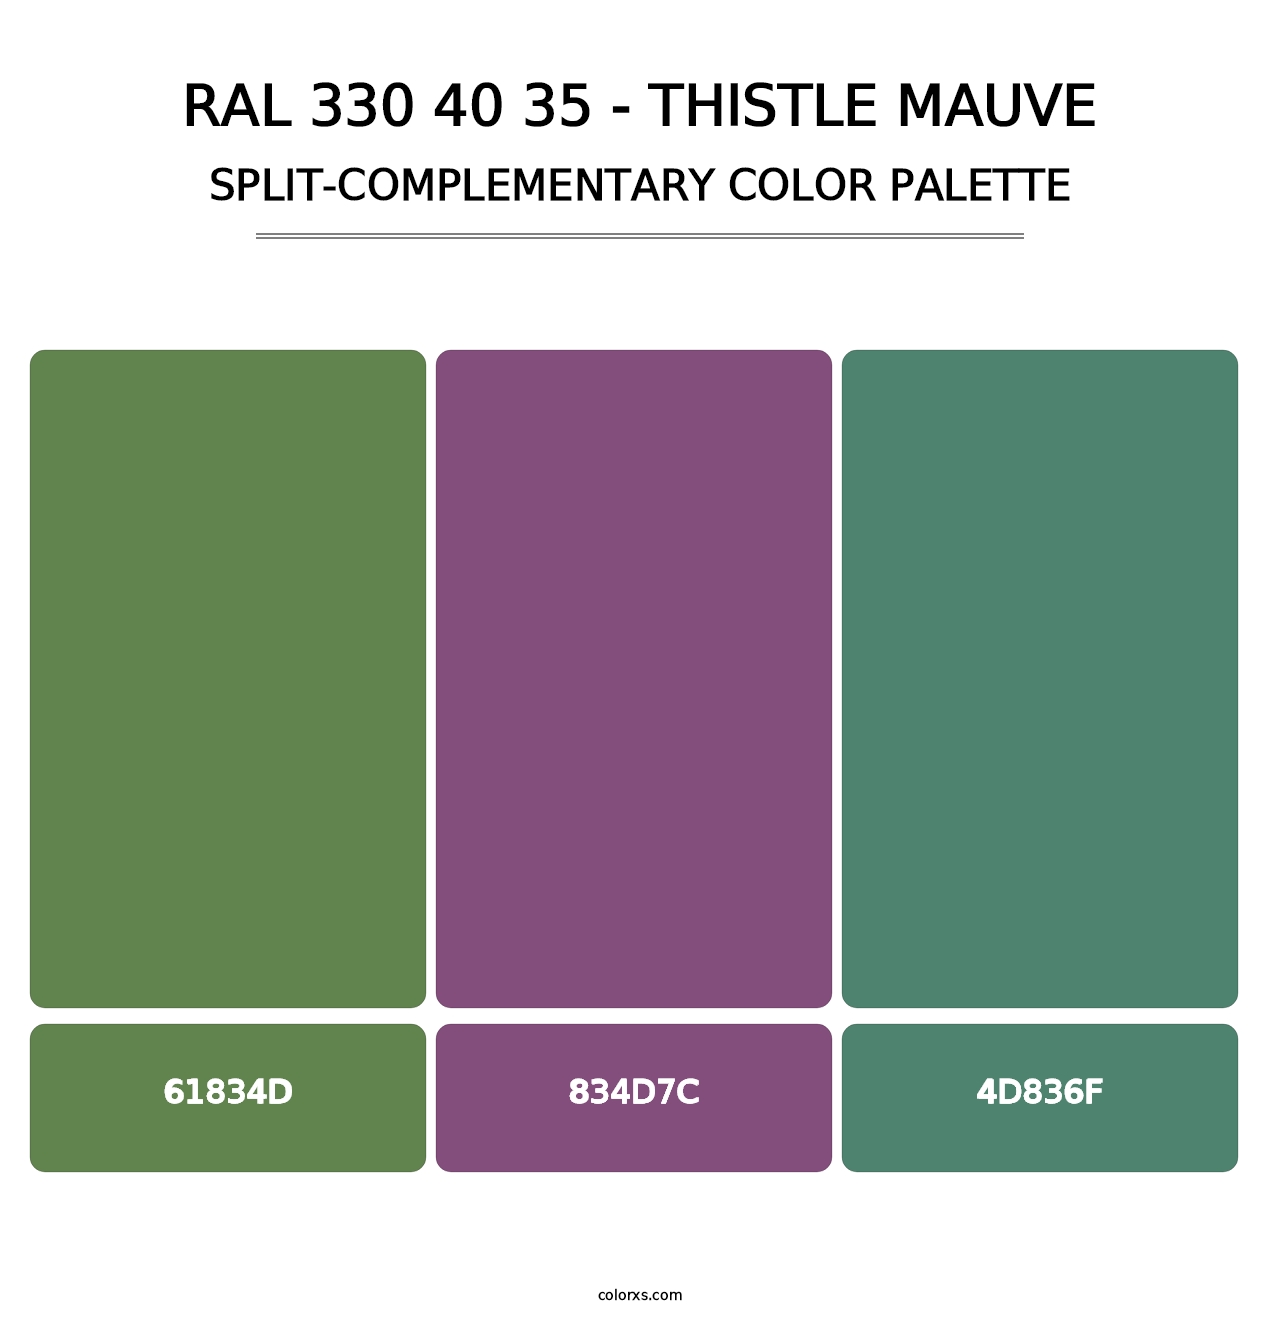 RAL 330 40 35 - Thistle Mauve - Split-Complementary Color Palette